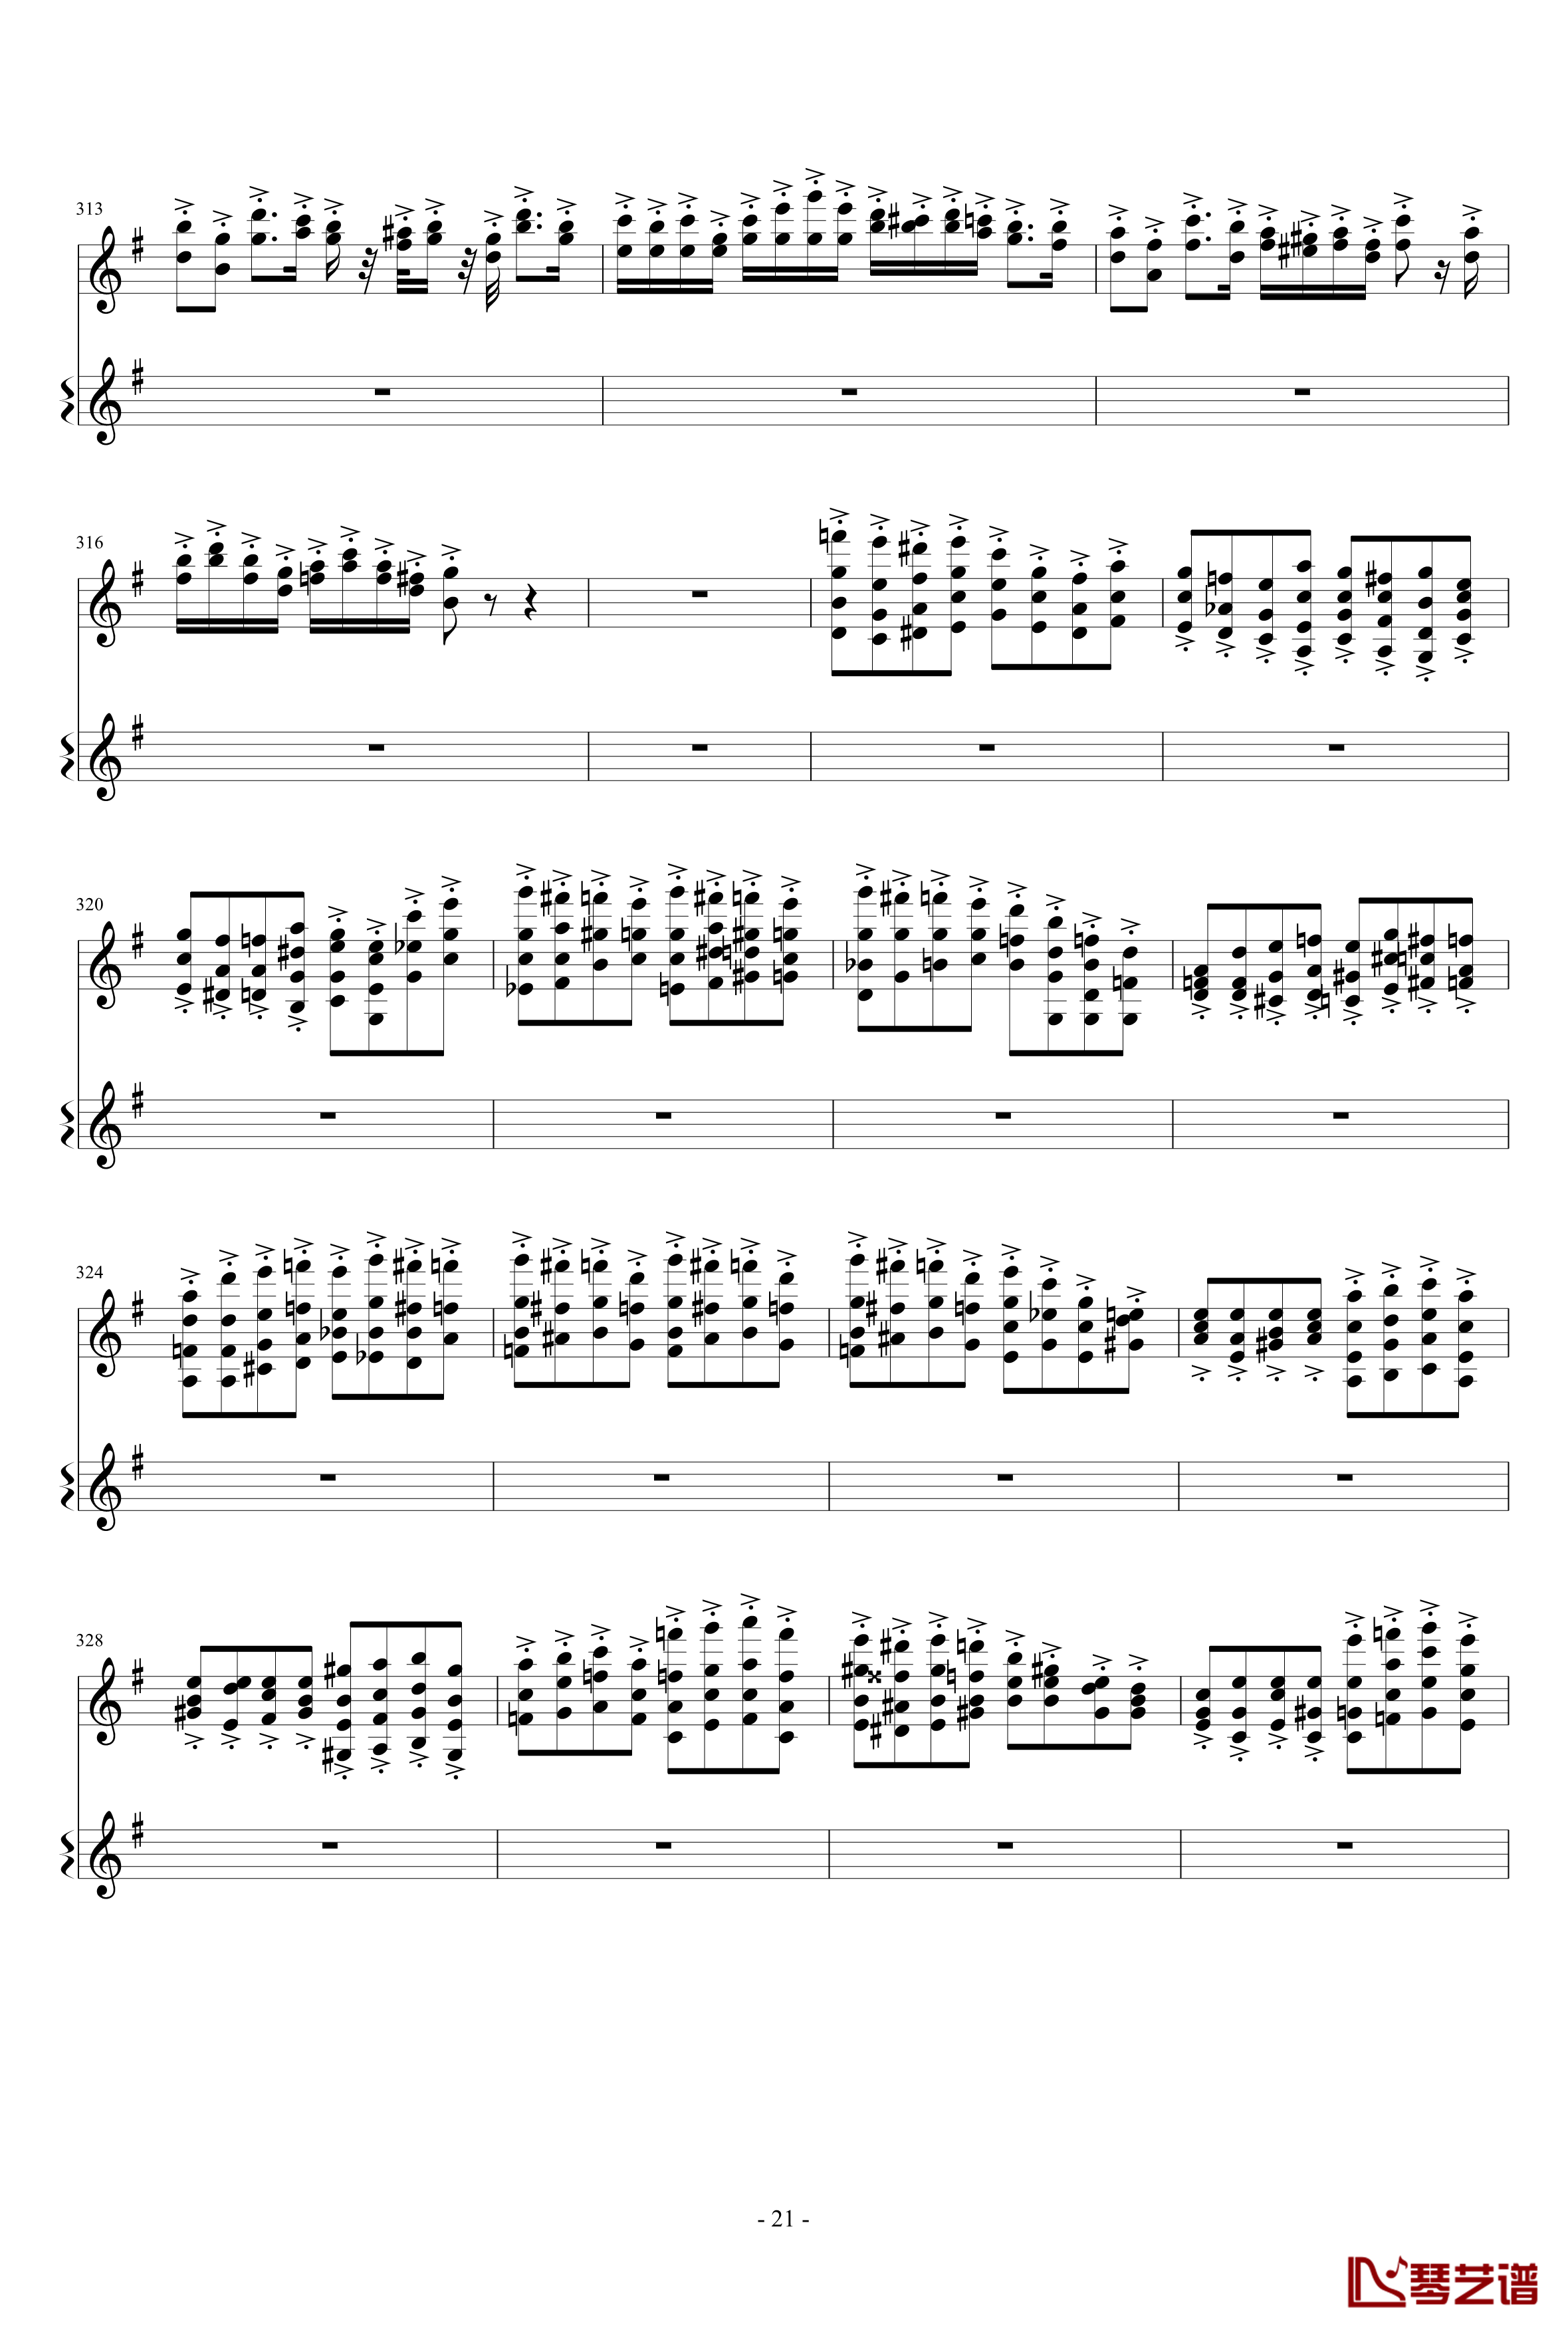 意大利国歌变奏曲钢琴谱-只修改了一个音-DXF21